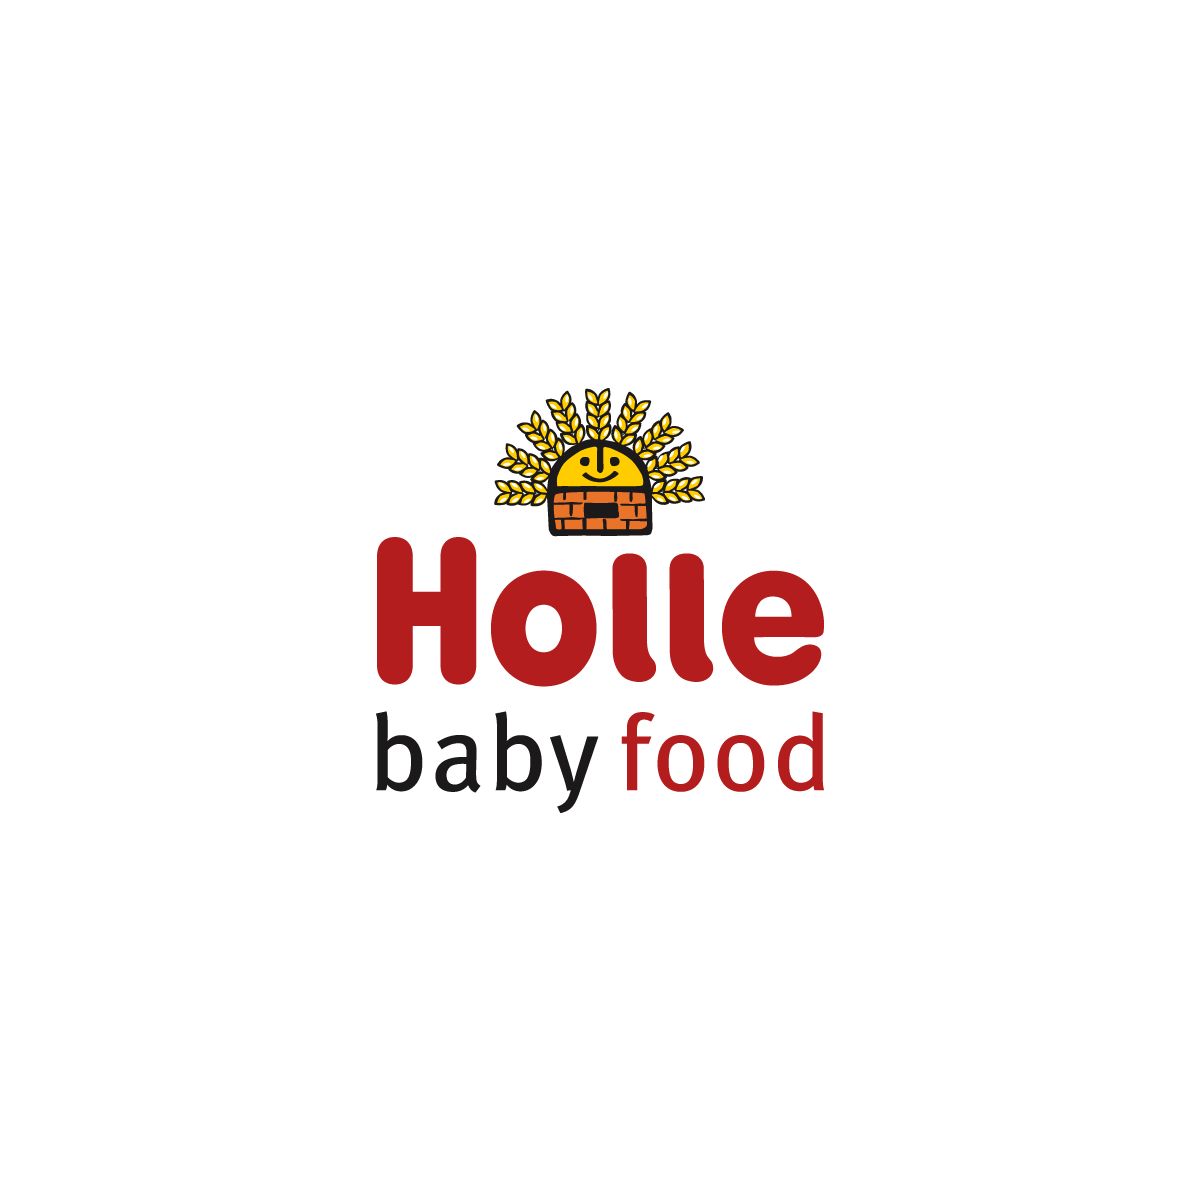  Holle - Hochwertige vegane Babynahrung 

  Das...